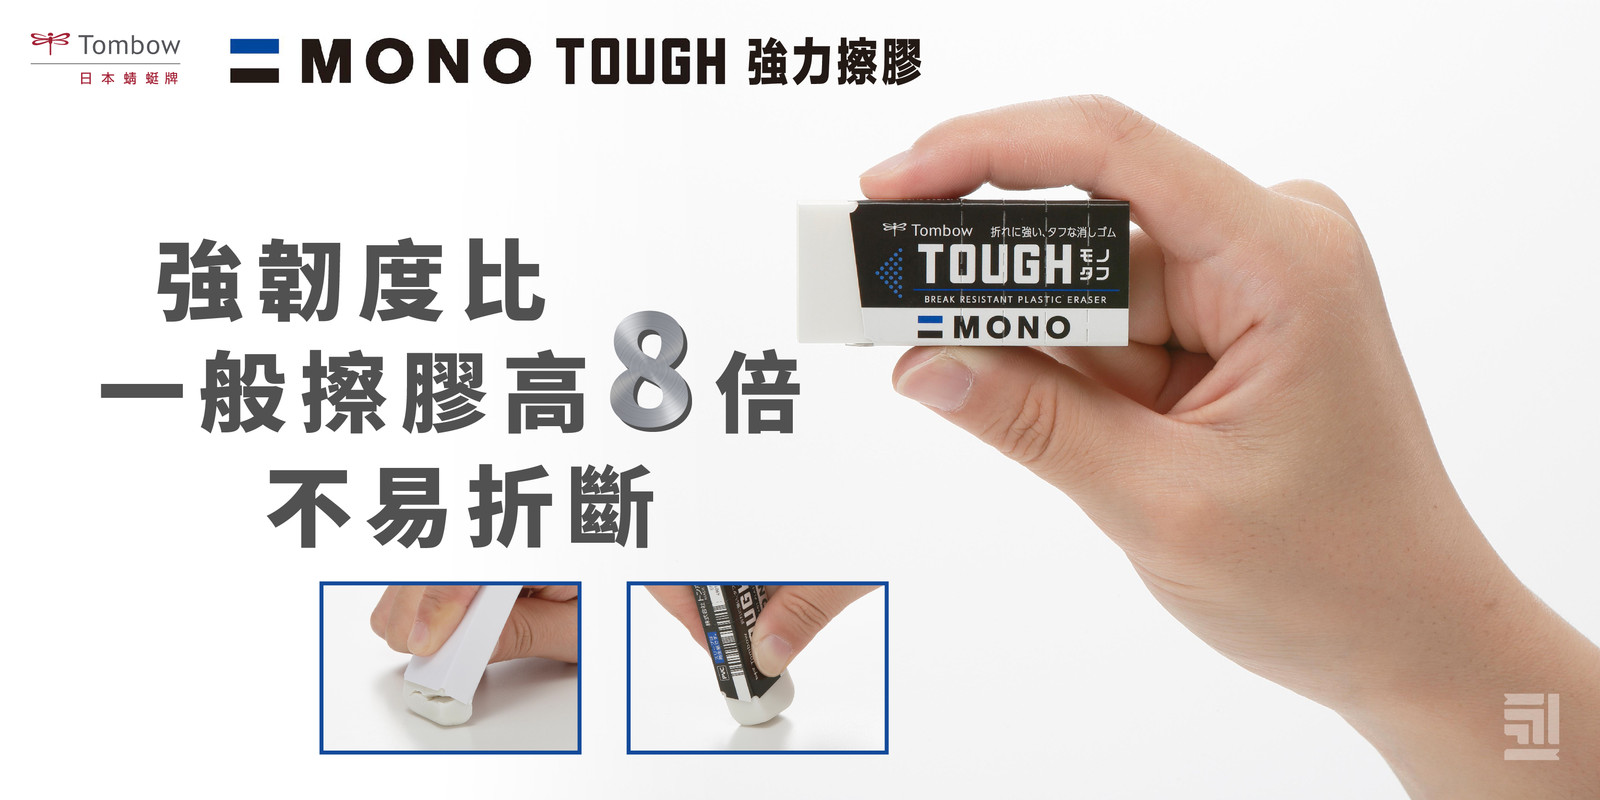 mono-tough-website-banner-01-1.jpg